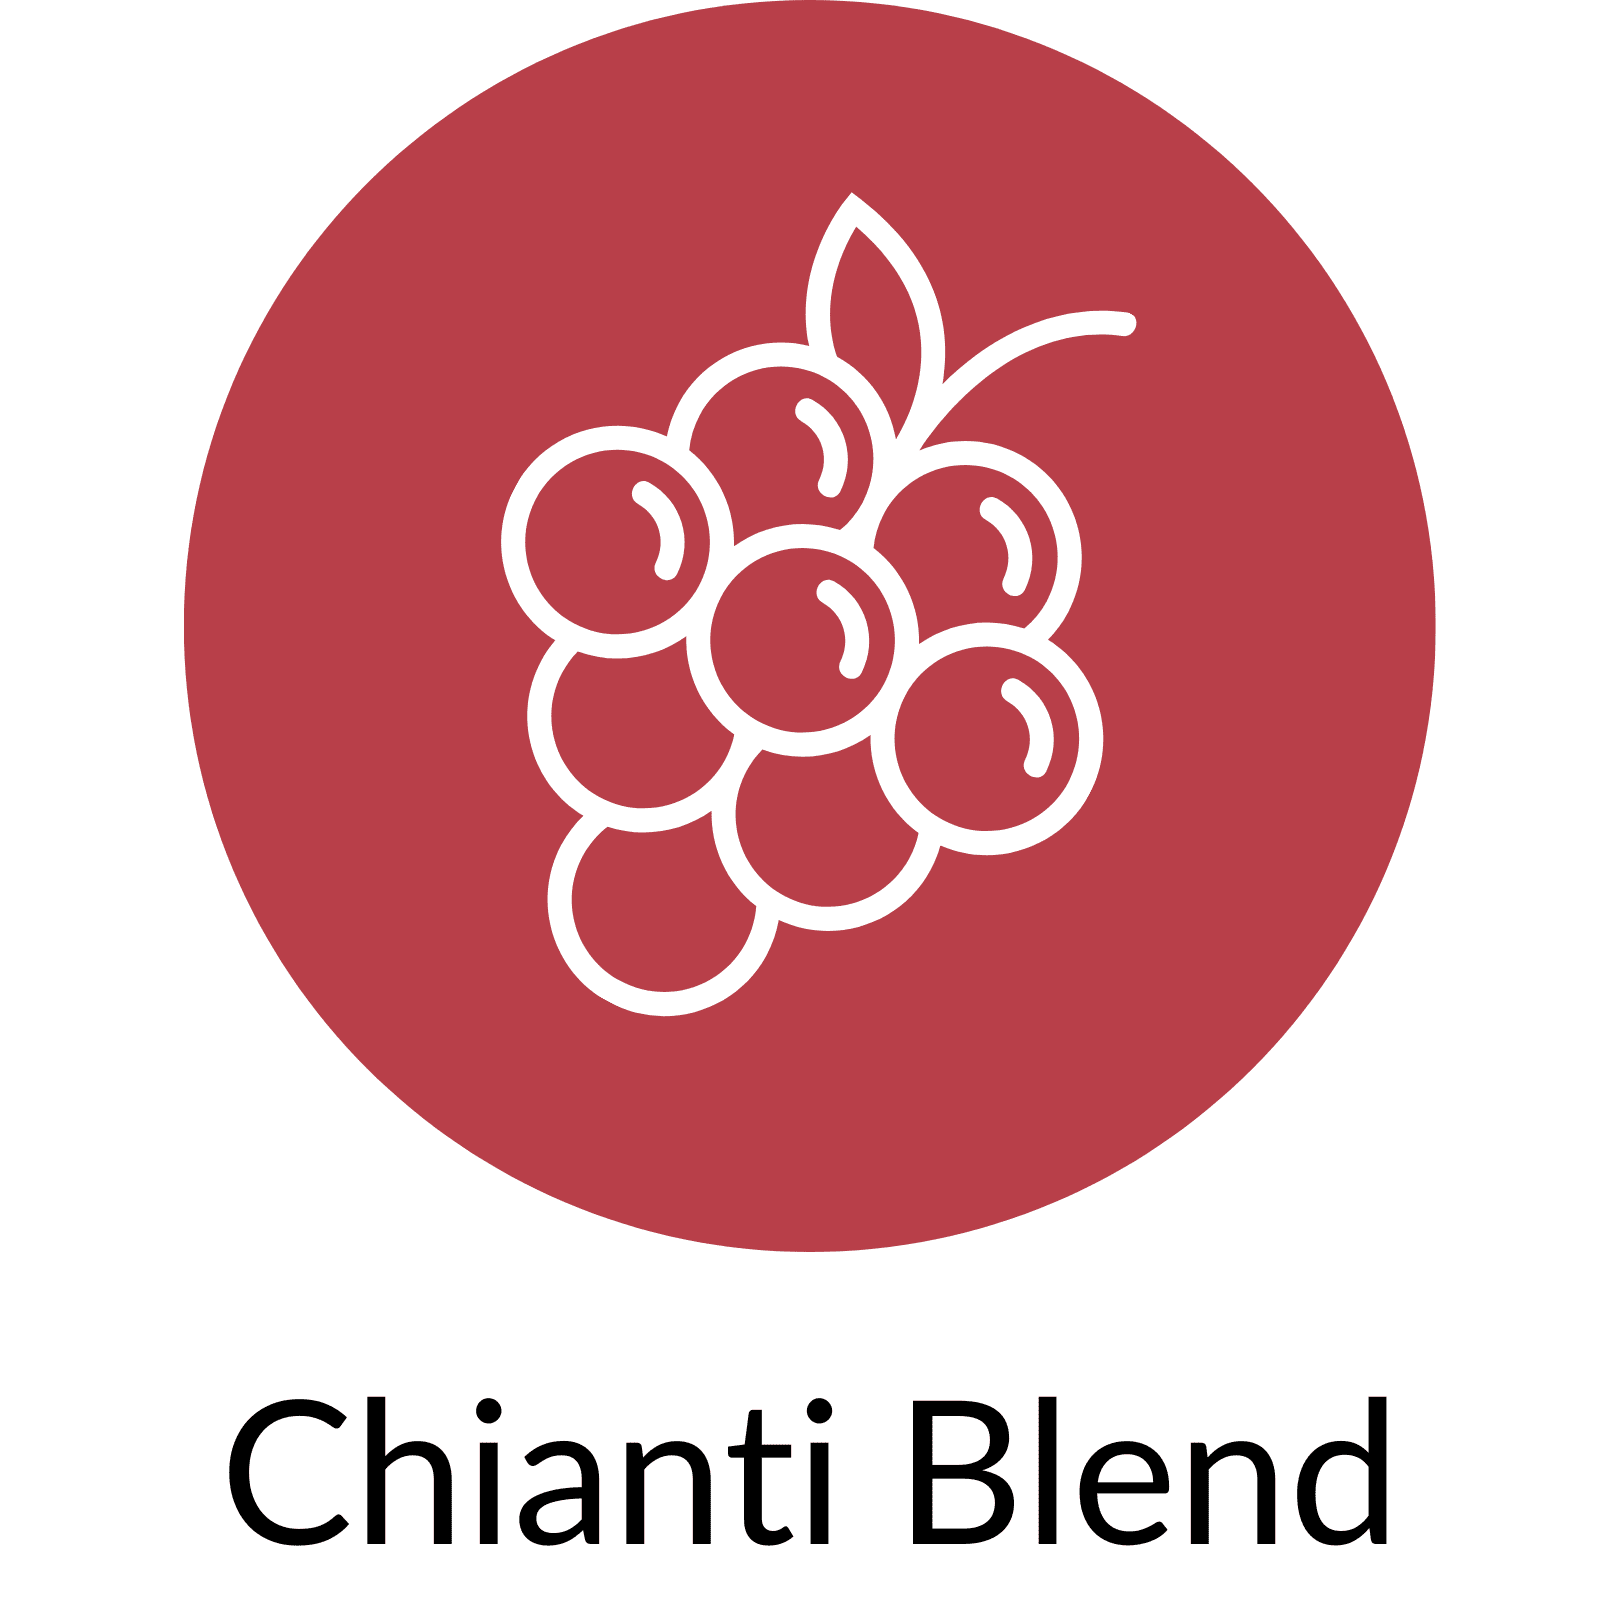 Chianti blend